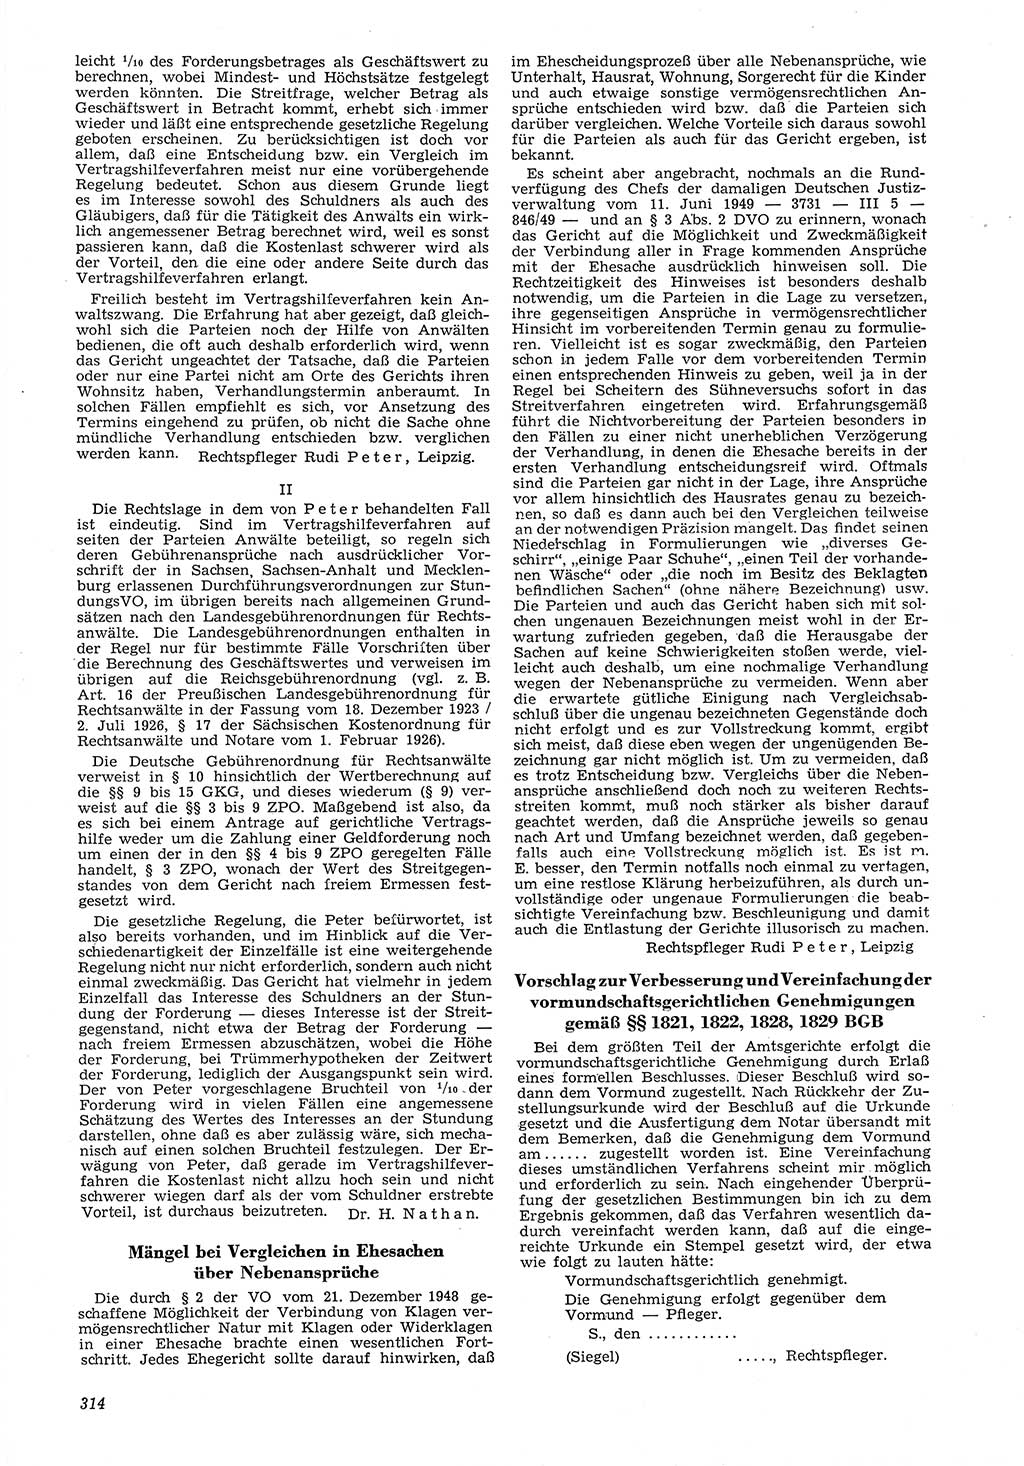 Neue Justiz (NJ), Zeitschrift für Recht und Rechtswissenschaft [Deutsche Demokratische Republik (DDR)], 6. Jahrgang 1952, Seite 314 (NJ DDR 1952, S. 314)